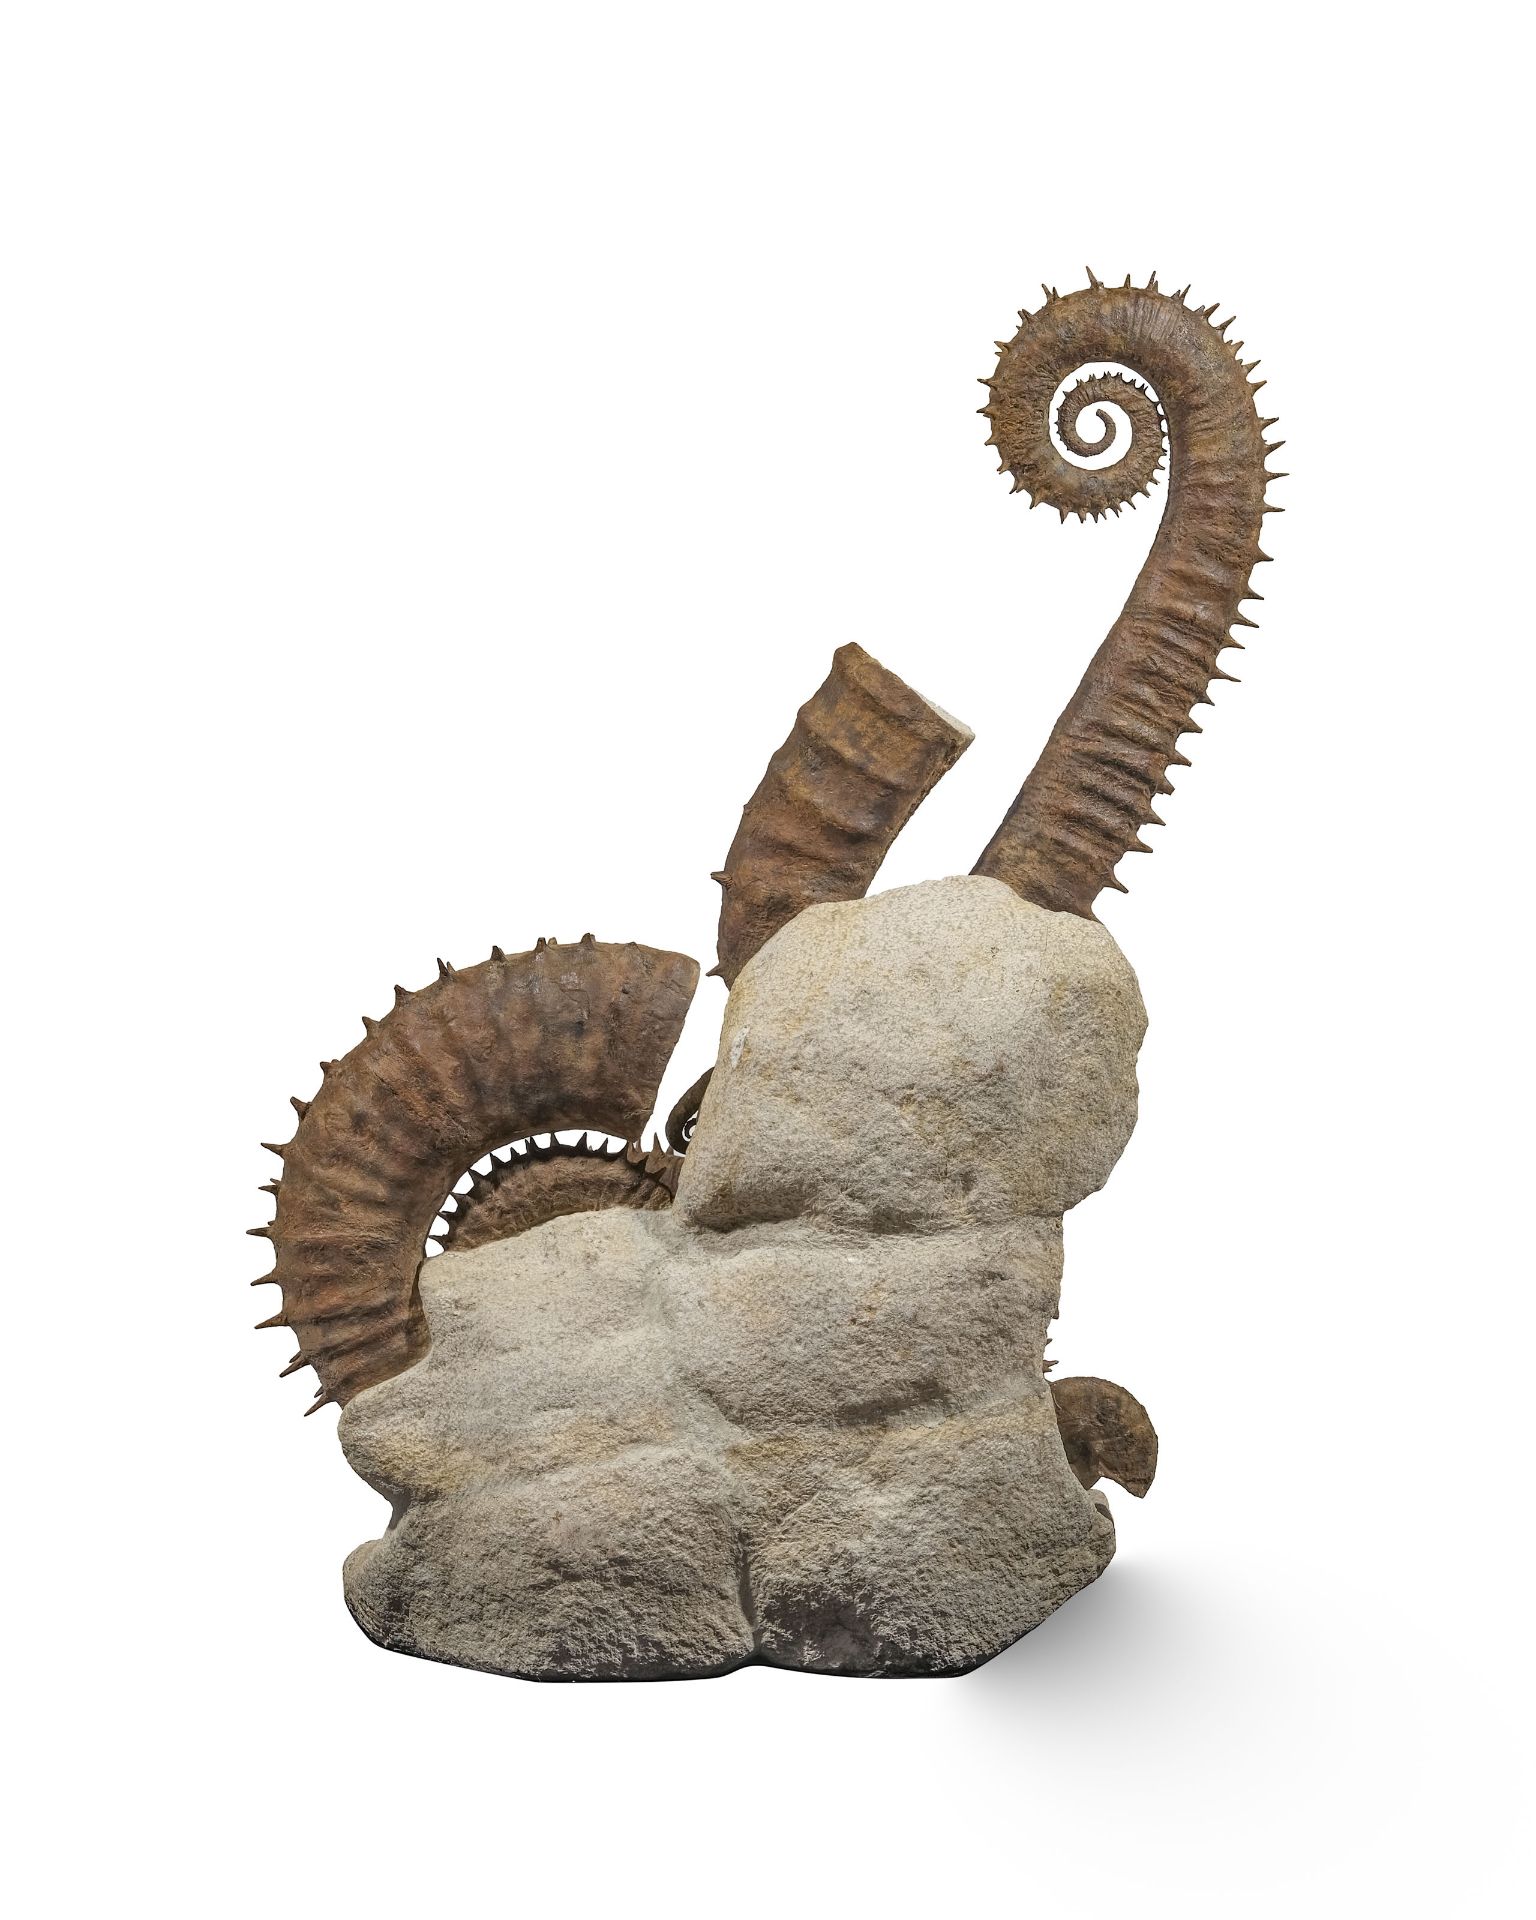 Cimetière marin d'ammonites déroulées épineuses, Maroc (région d'Agadir), h. 105 cm - Image 4 of 4